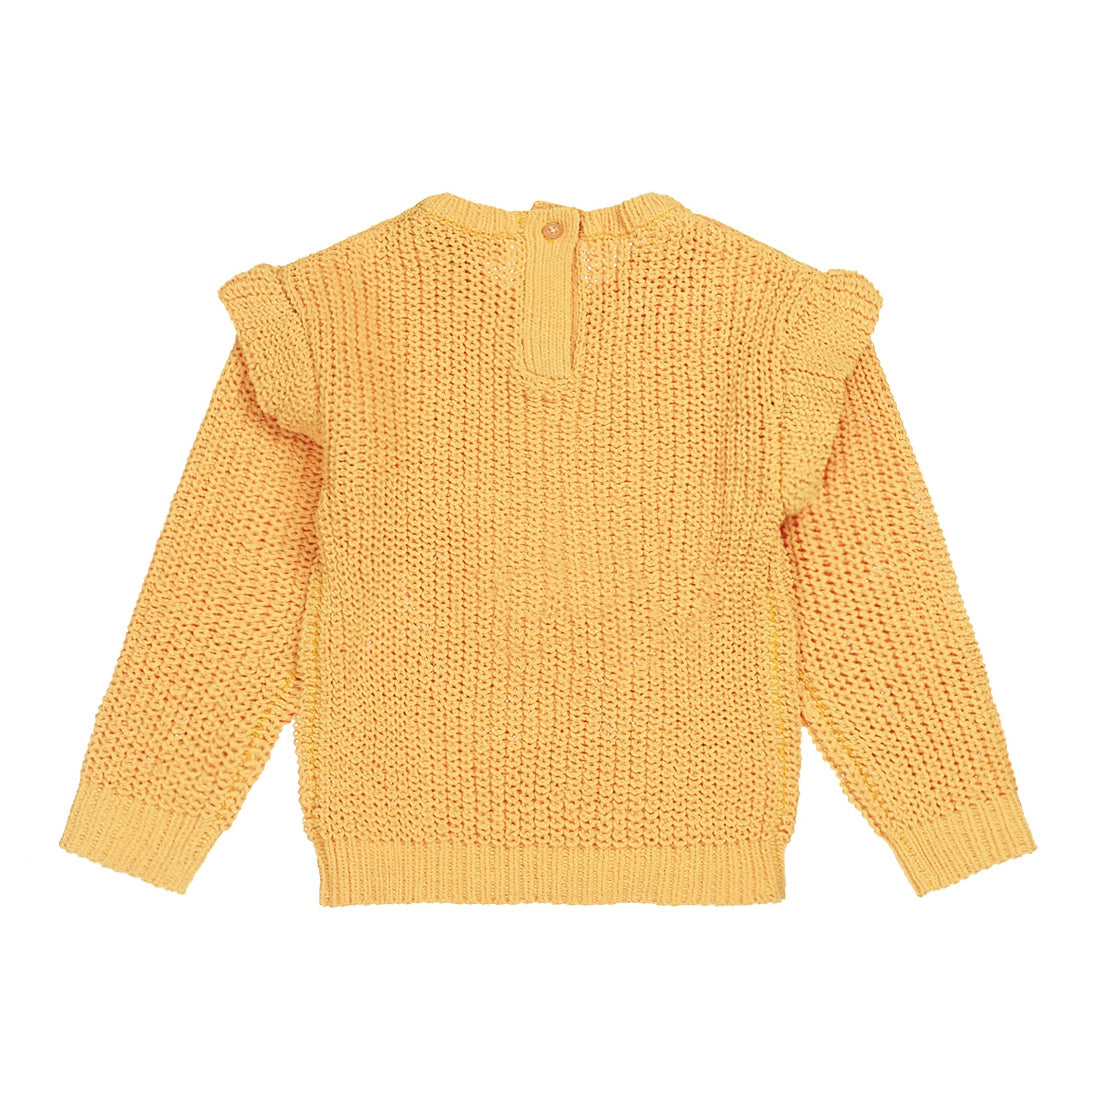 Meisjes Sweater ls with crewneck van Koko Noko in de kleur Ochre in maat 128.